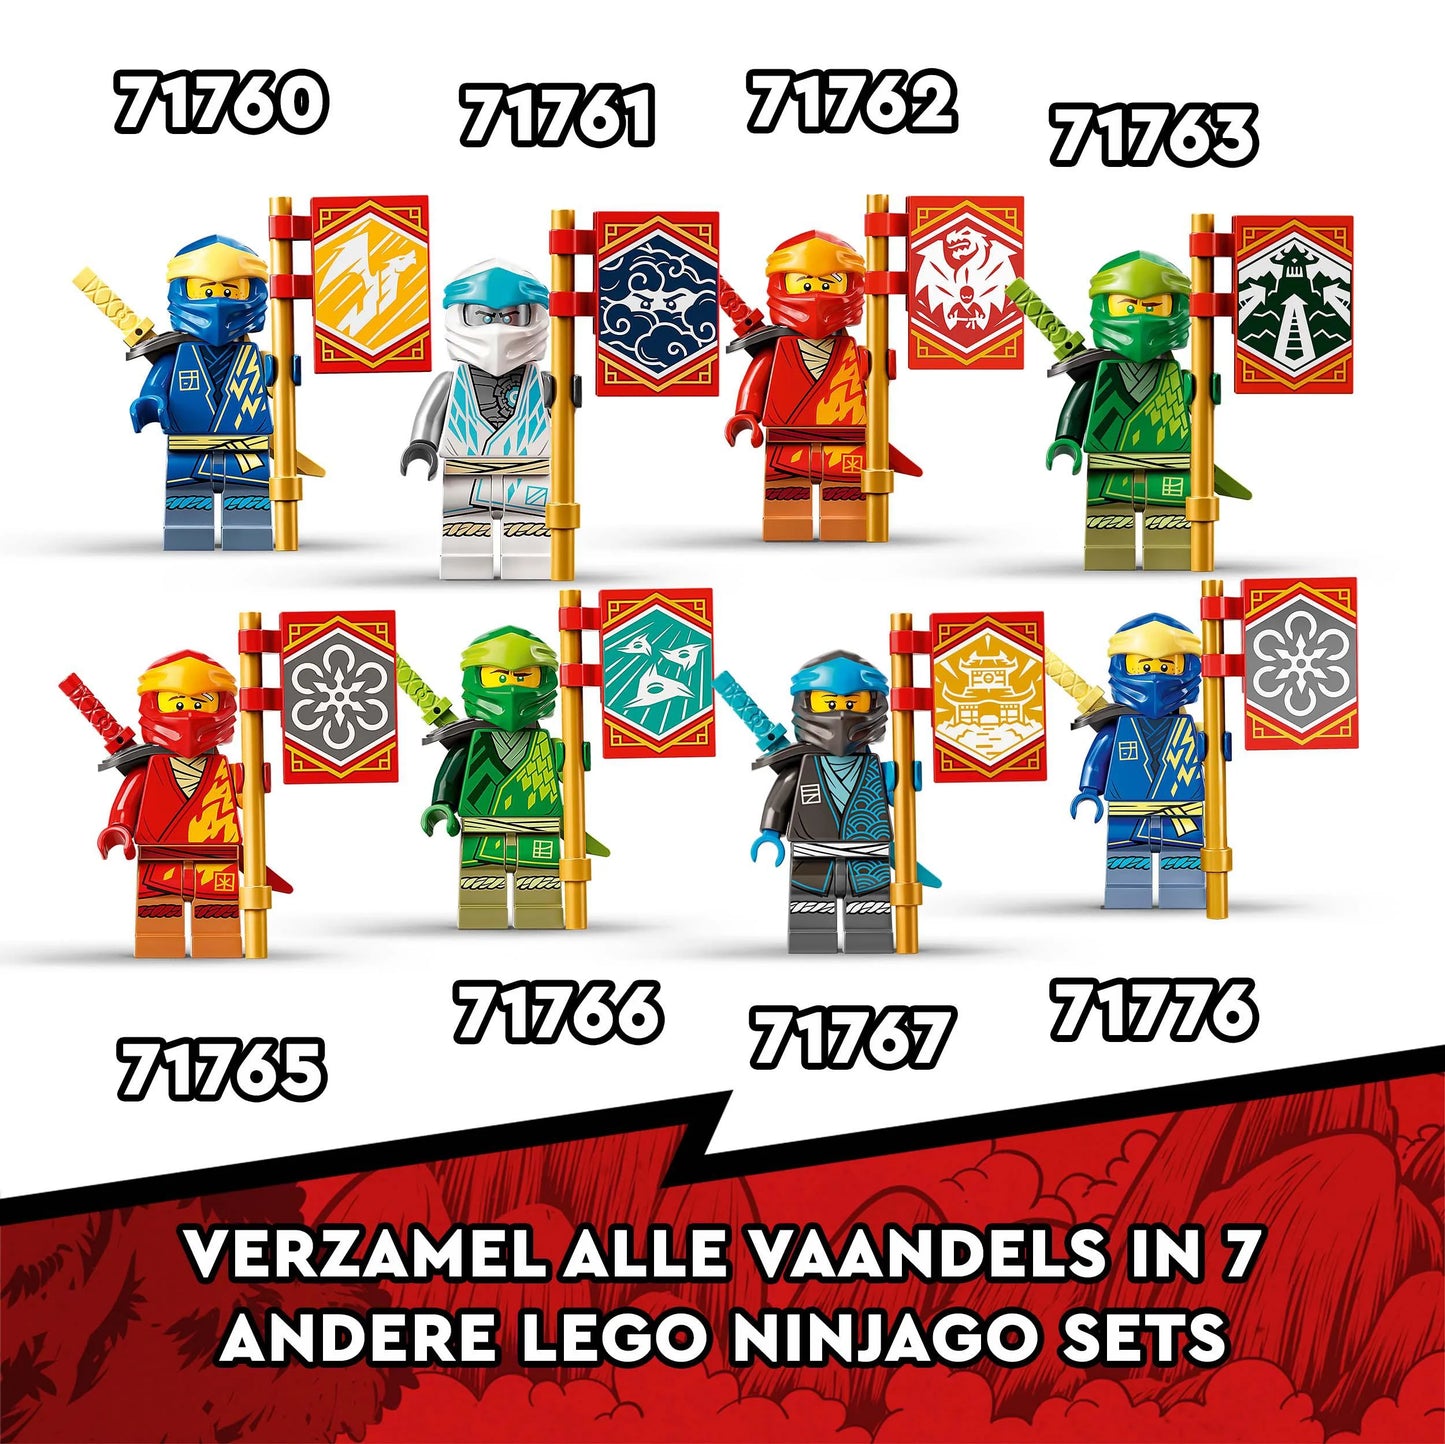 Ninja ultra-LEGO Ninjago